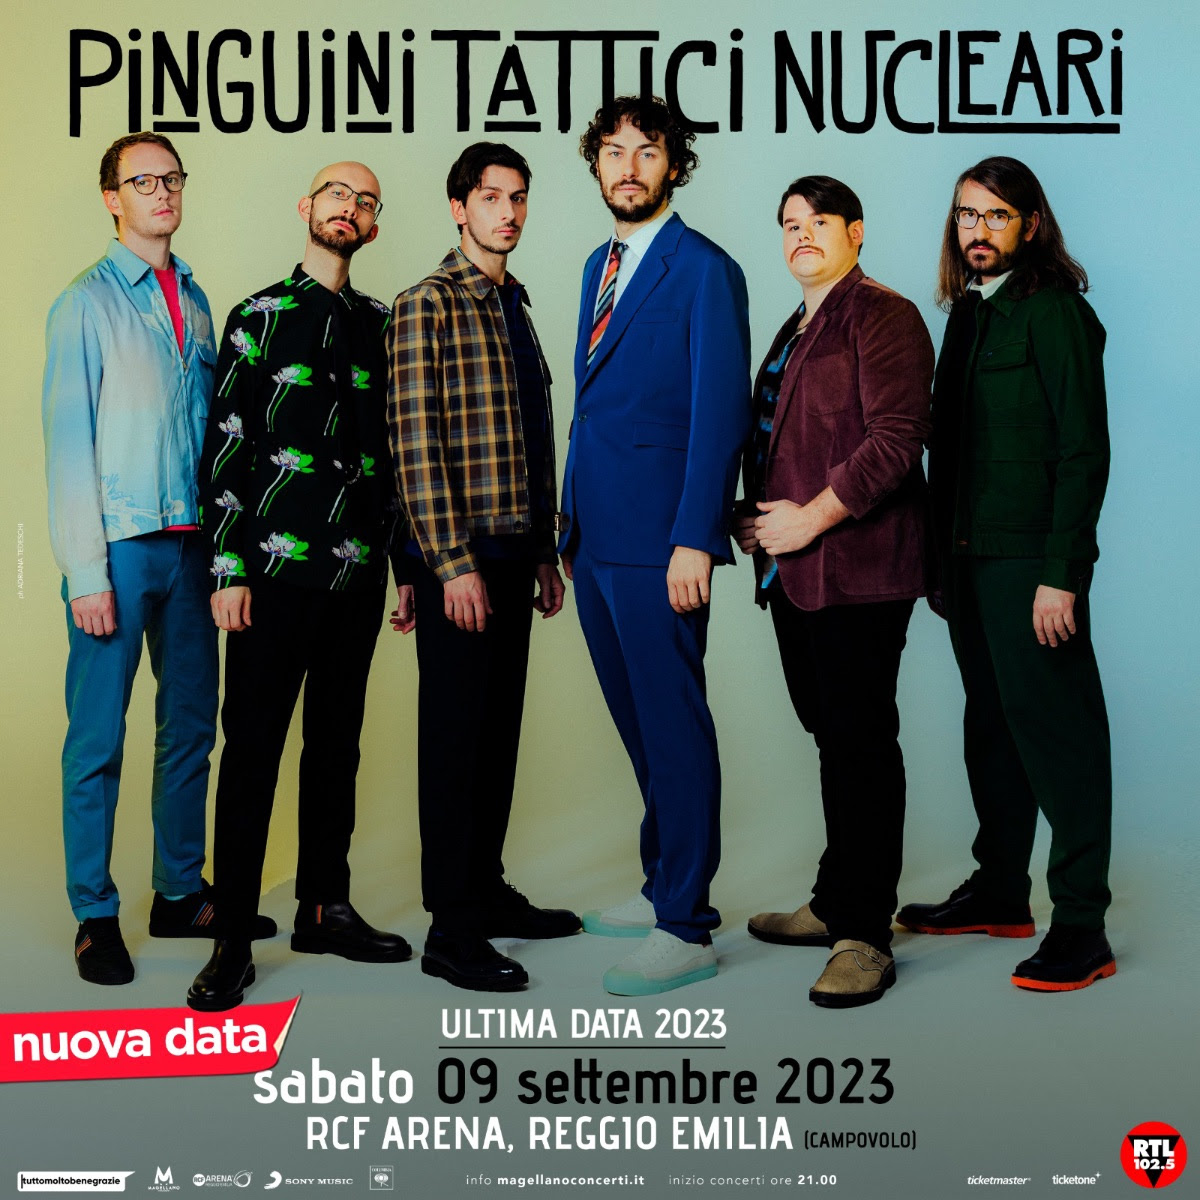 Concerto Pinguini Tattici Nucleari a Campovolo nel 2023: data, biglietti e come arrivare